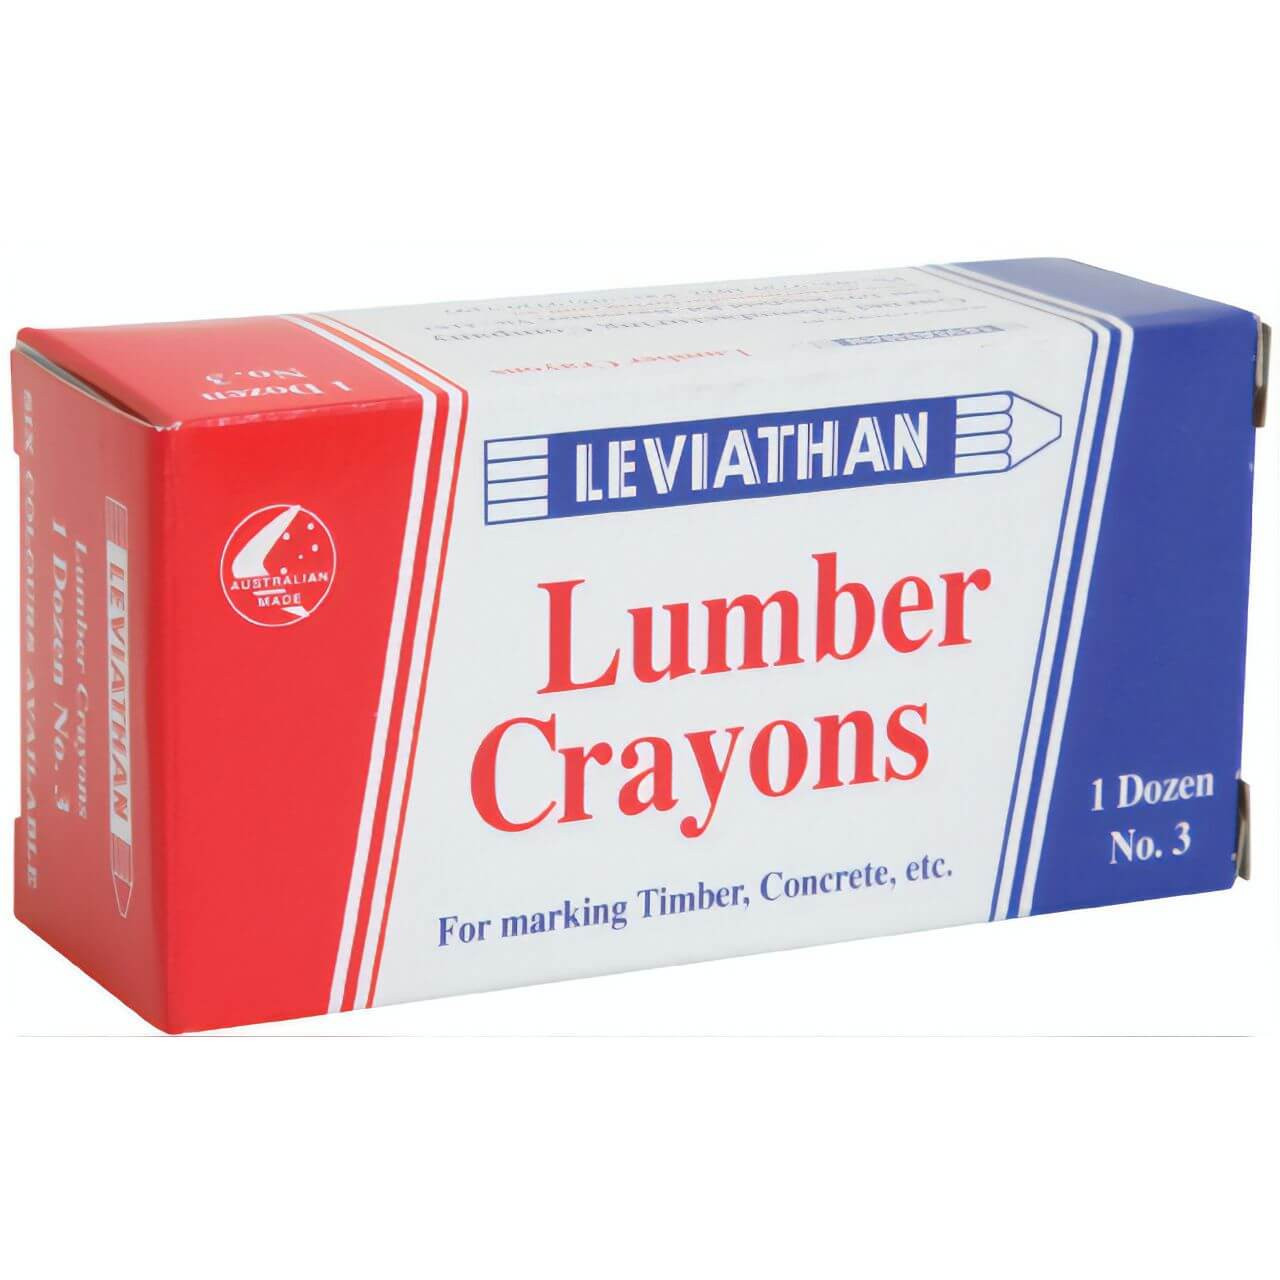 Leviathan No3 Lumber Crayon Green 12pk